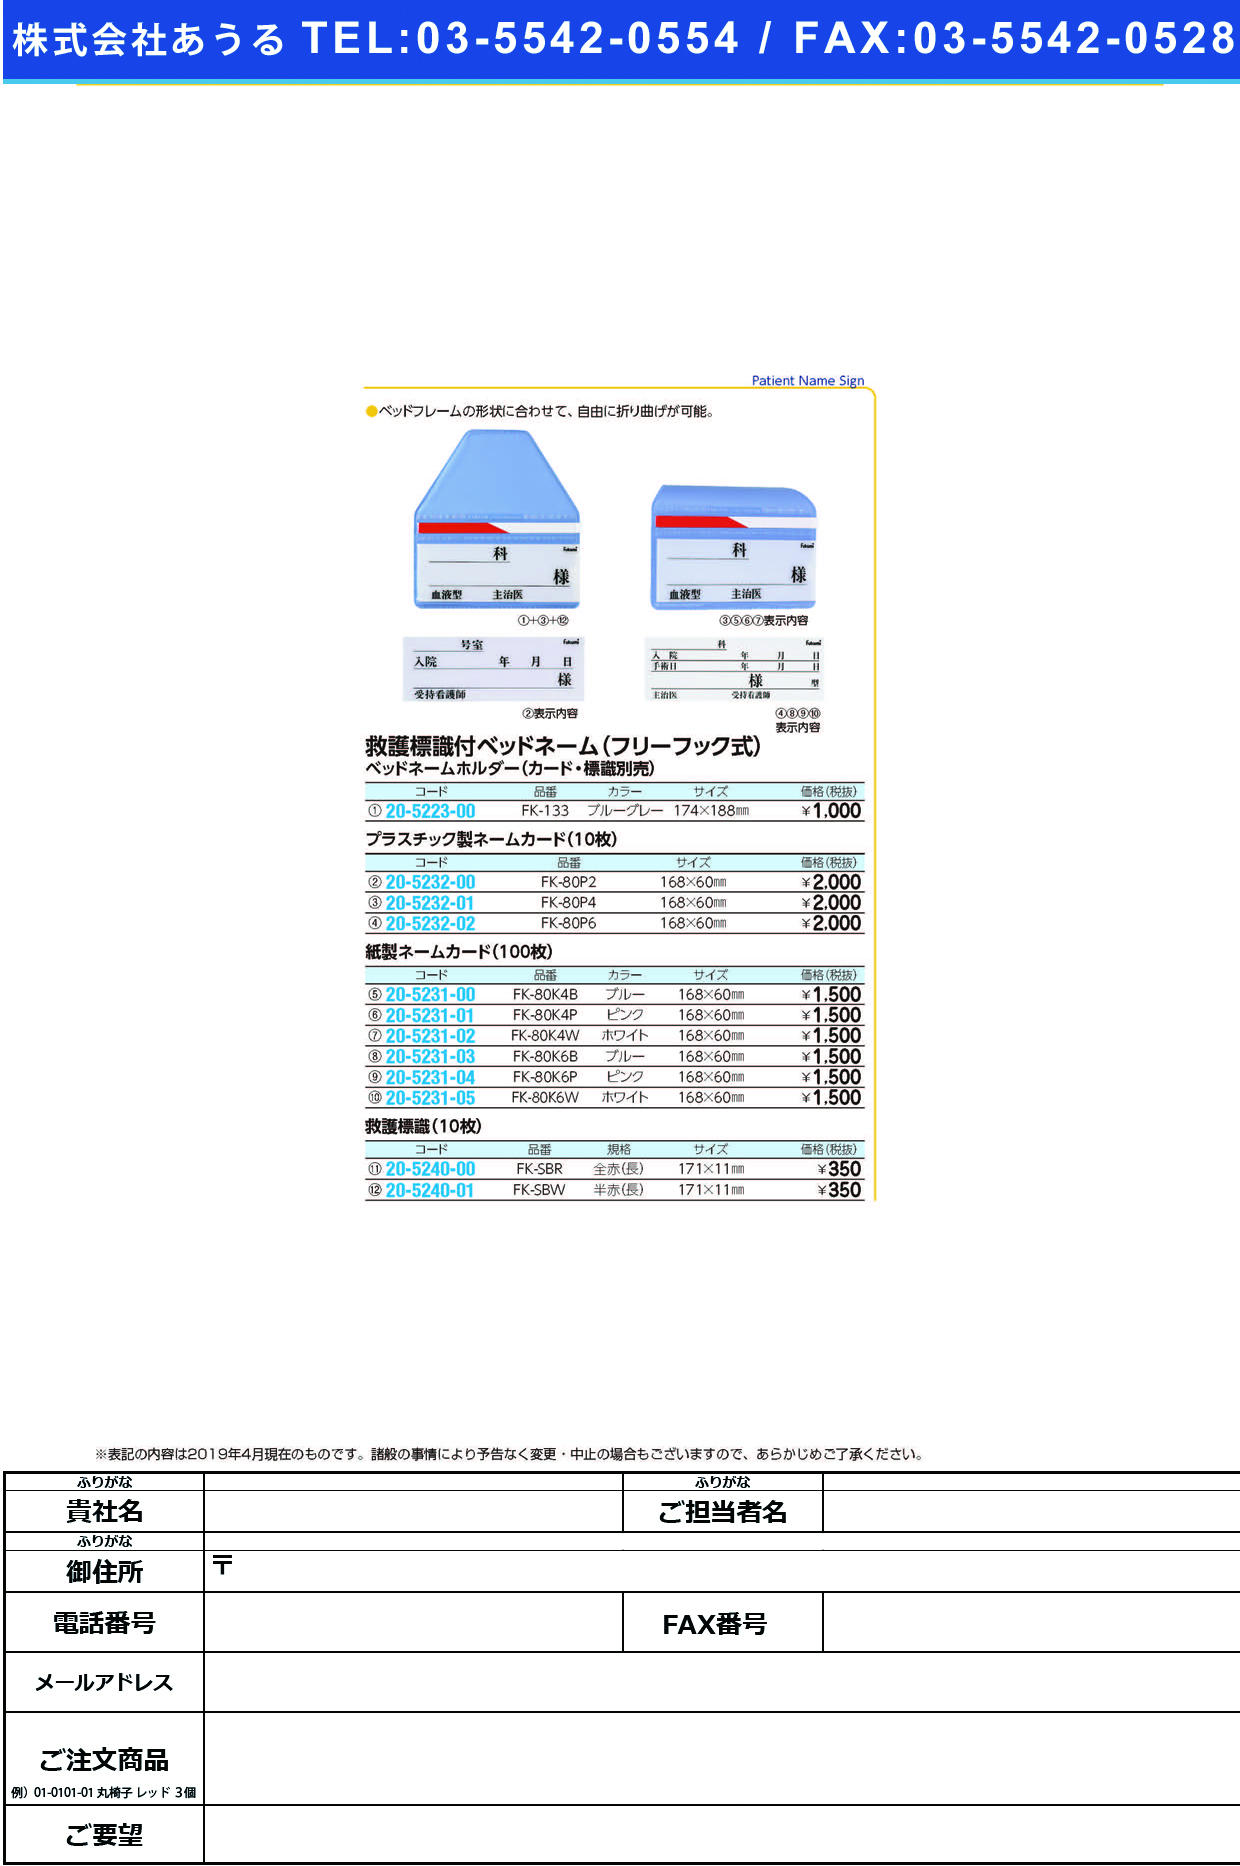 (20-5232-02)ネームカード（プラ） FK-80P6(10ﾏｲｲﾘ) ﾈｰﾑｶｰﾄﾞ【1束単位】【2019年カタログ商品】